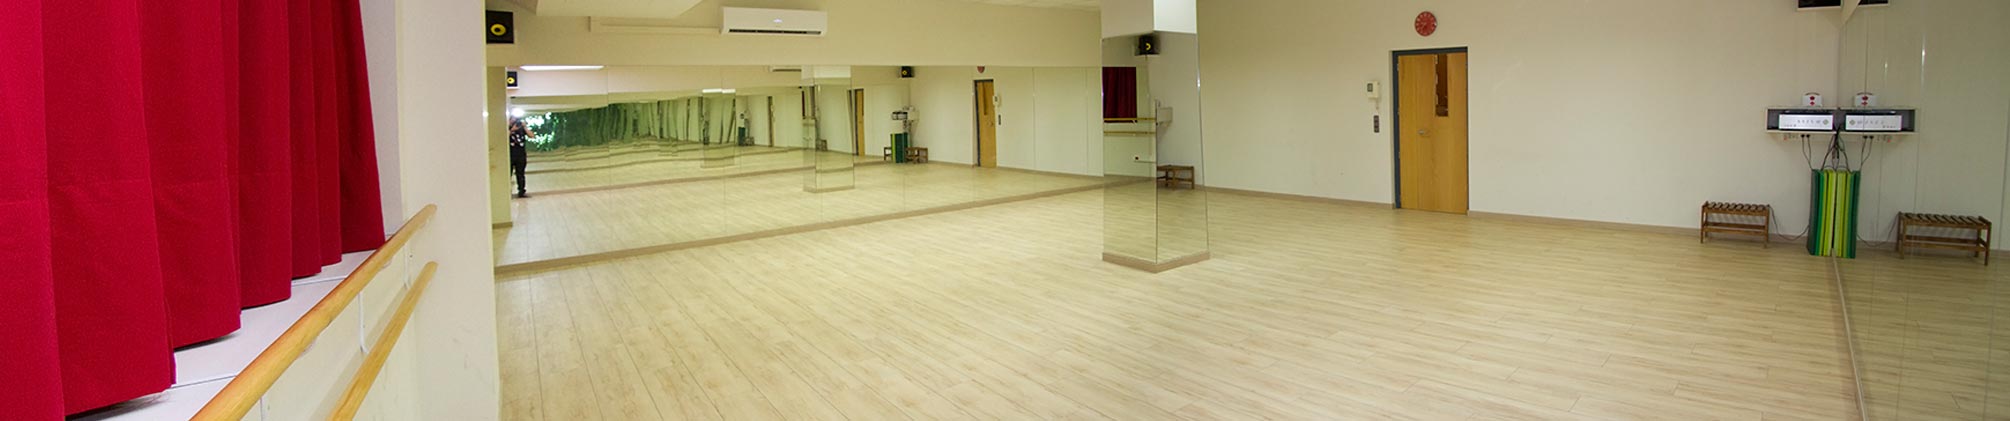 Instalaciones en Zaragoza - Escuela Bailarán